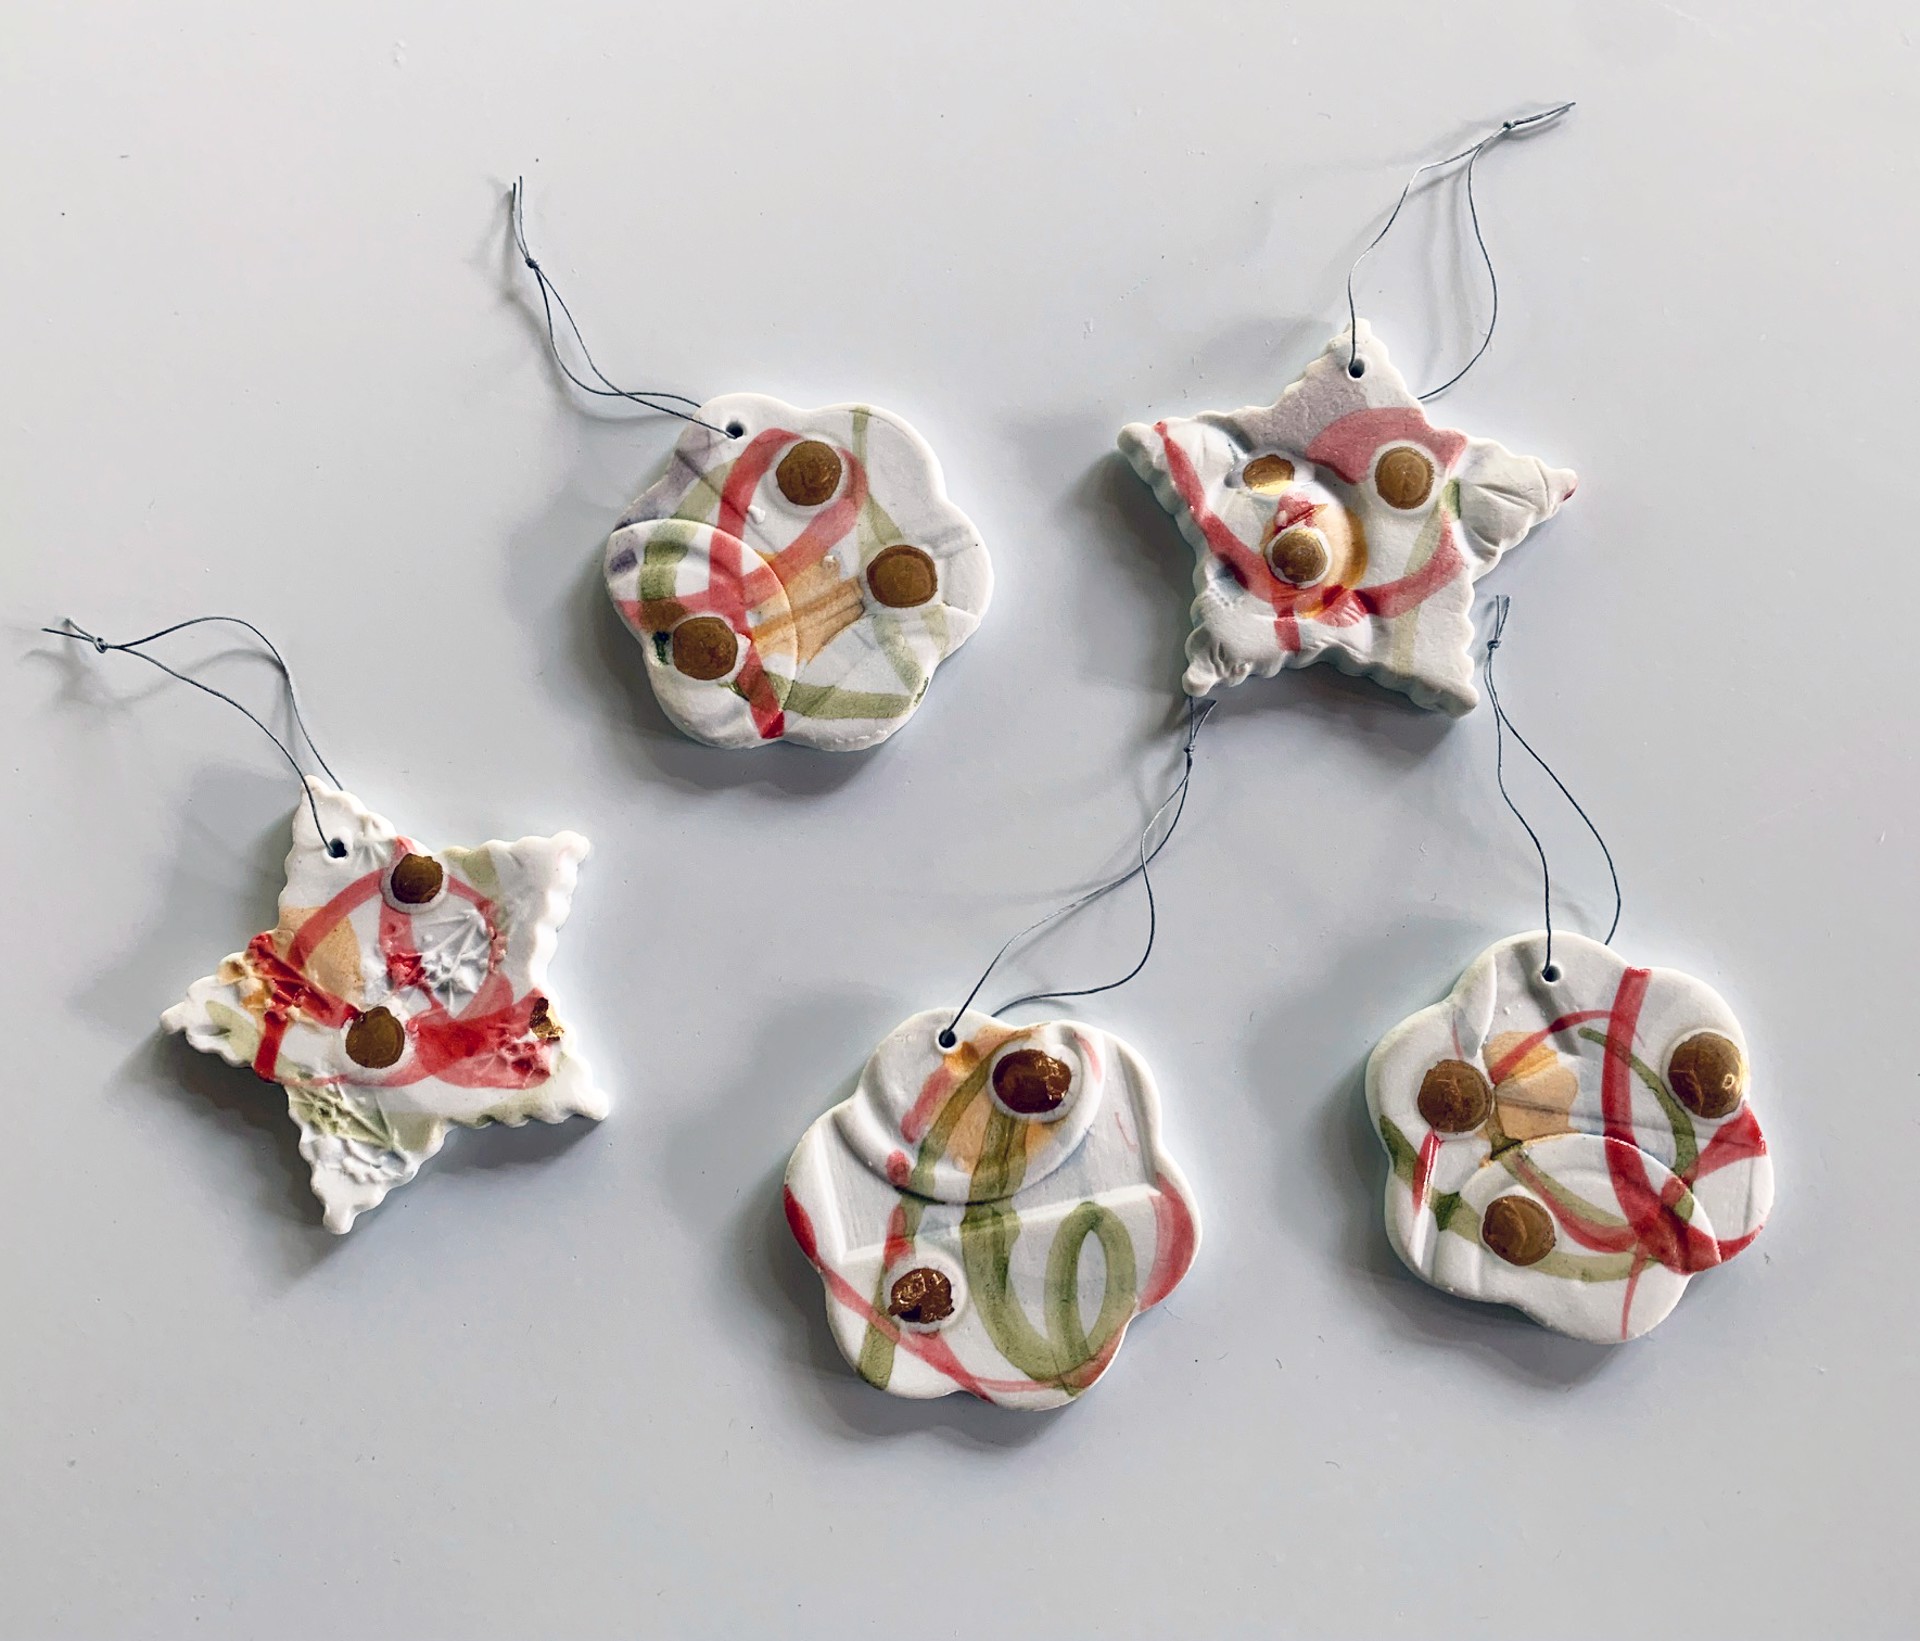 Confetti Ornament by Juliane Shibata